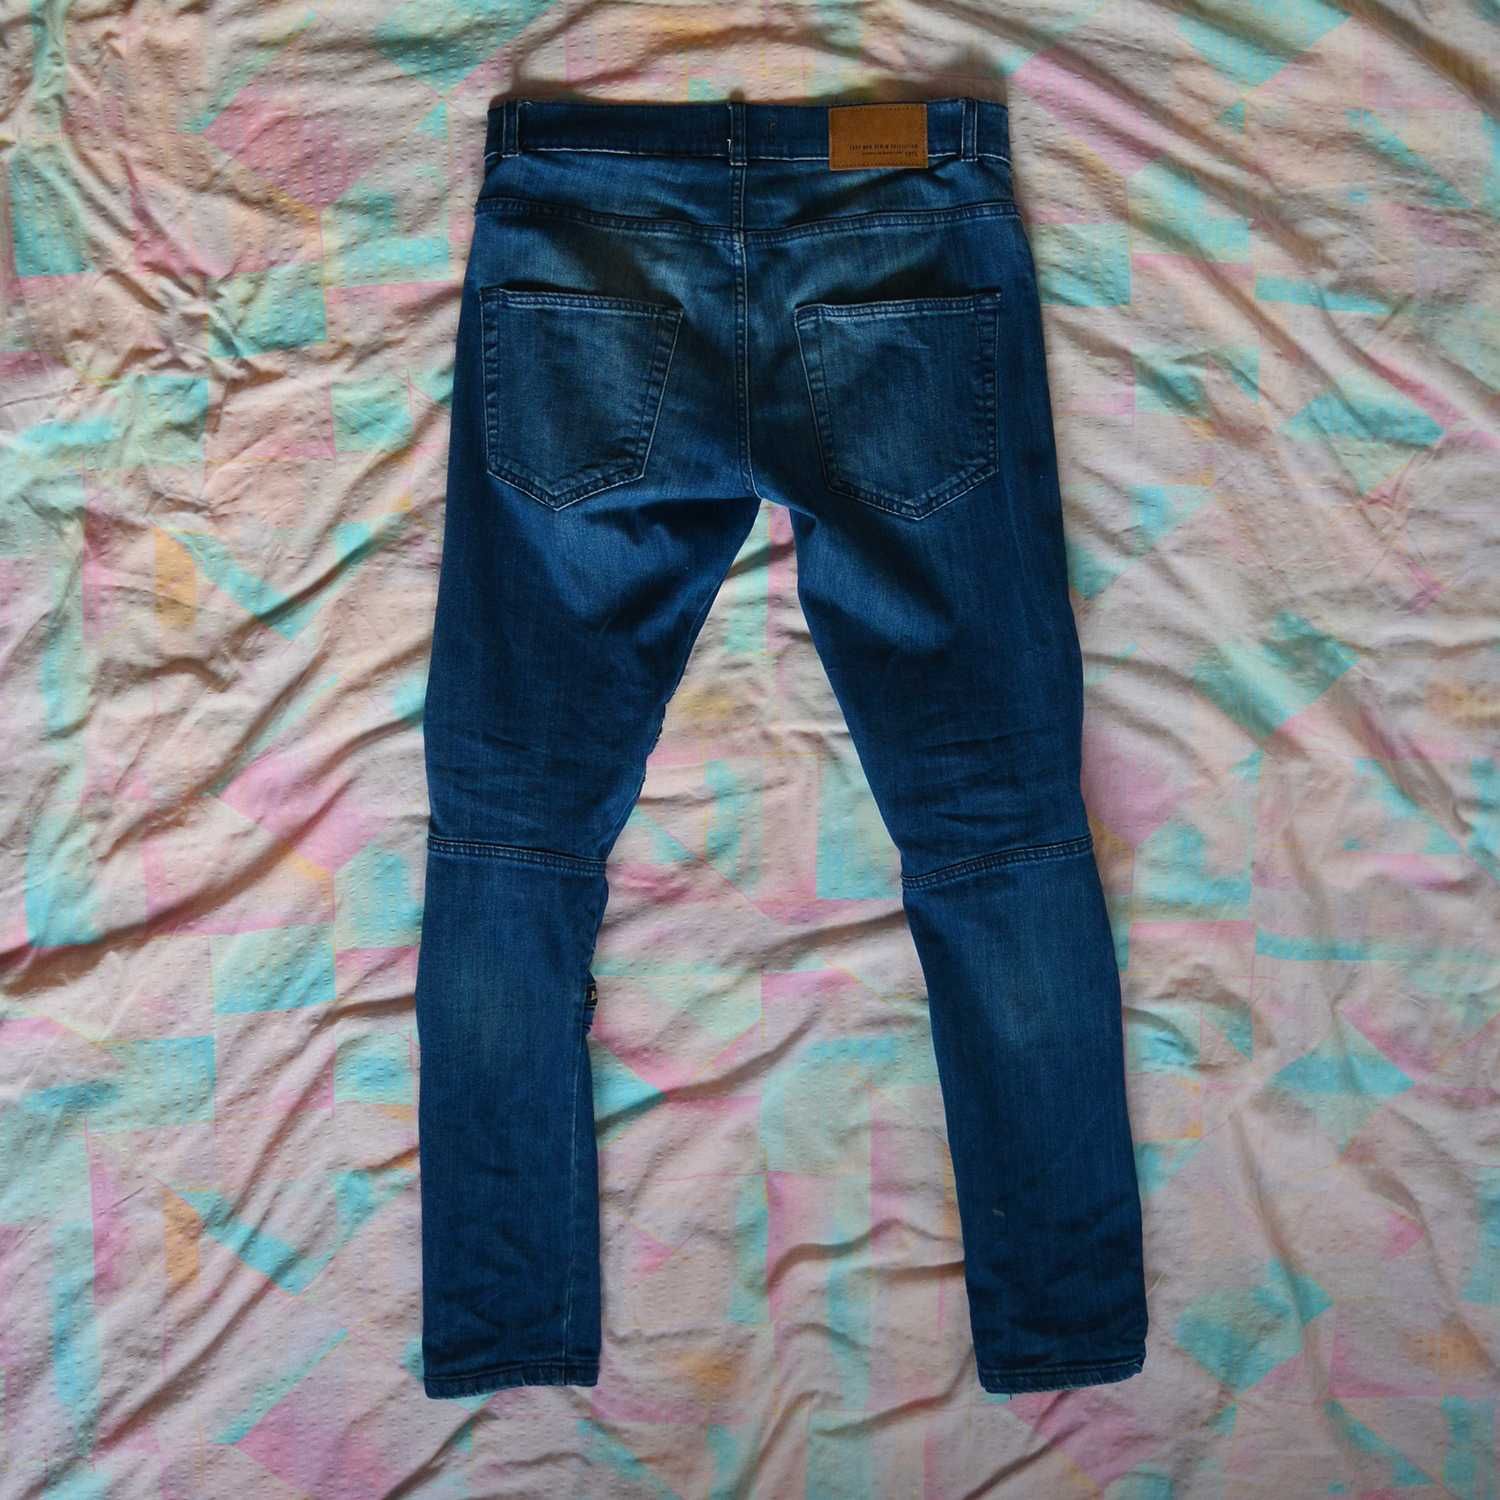 Spodnie jeansy Zara 40 31 slim fit z przetarciami suwakami elastyczne